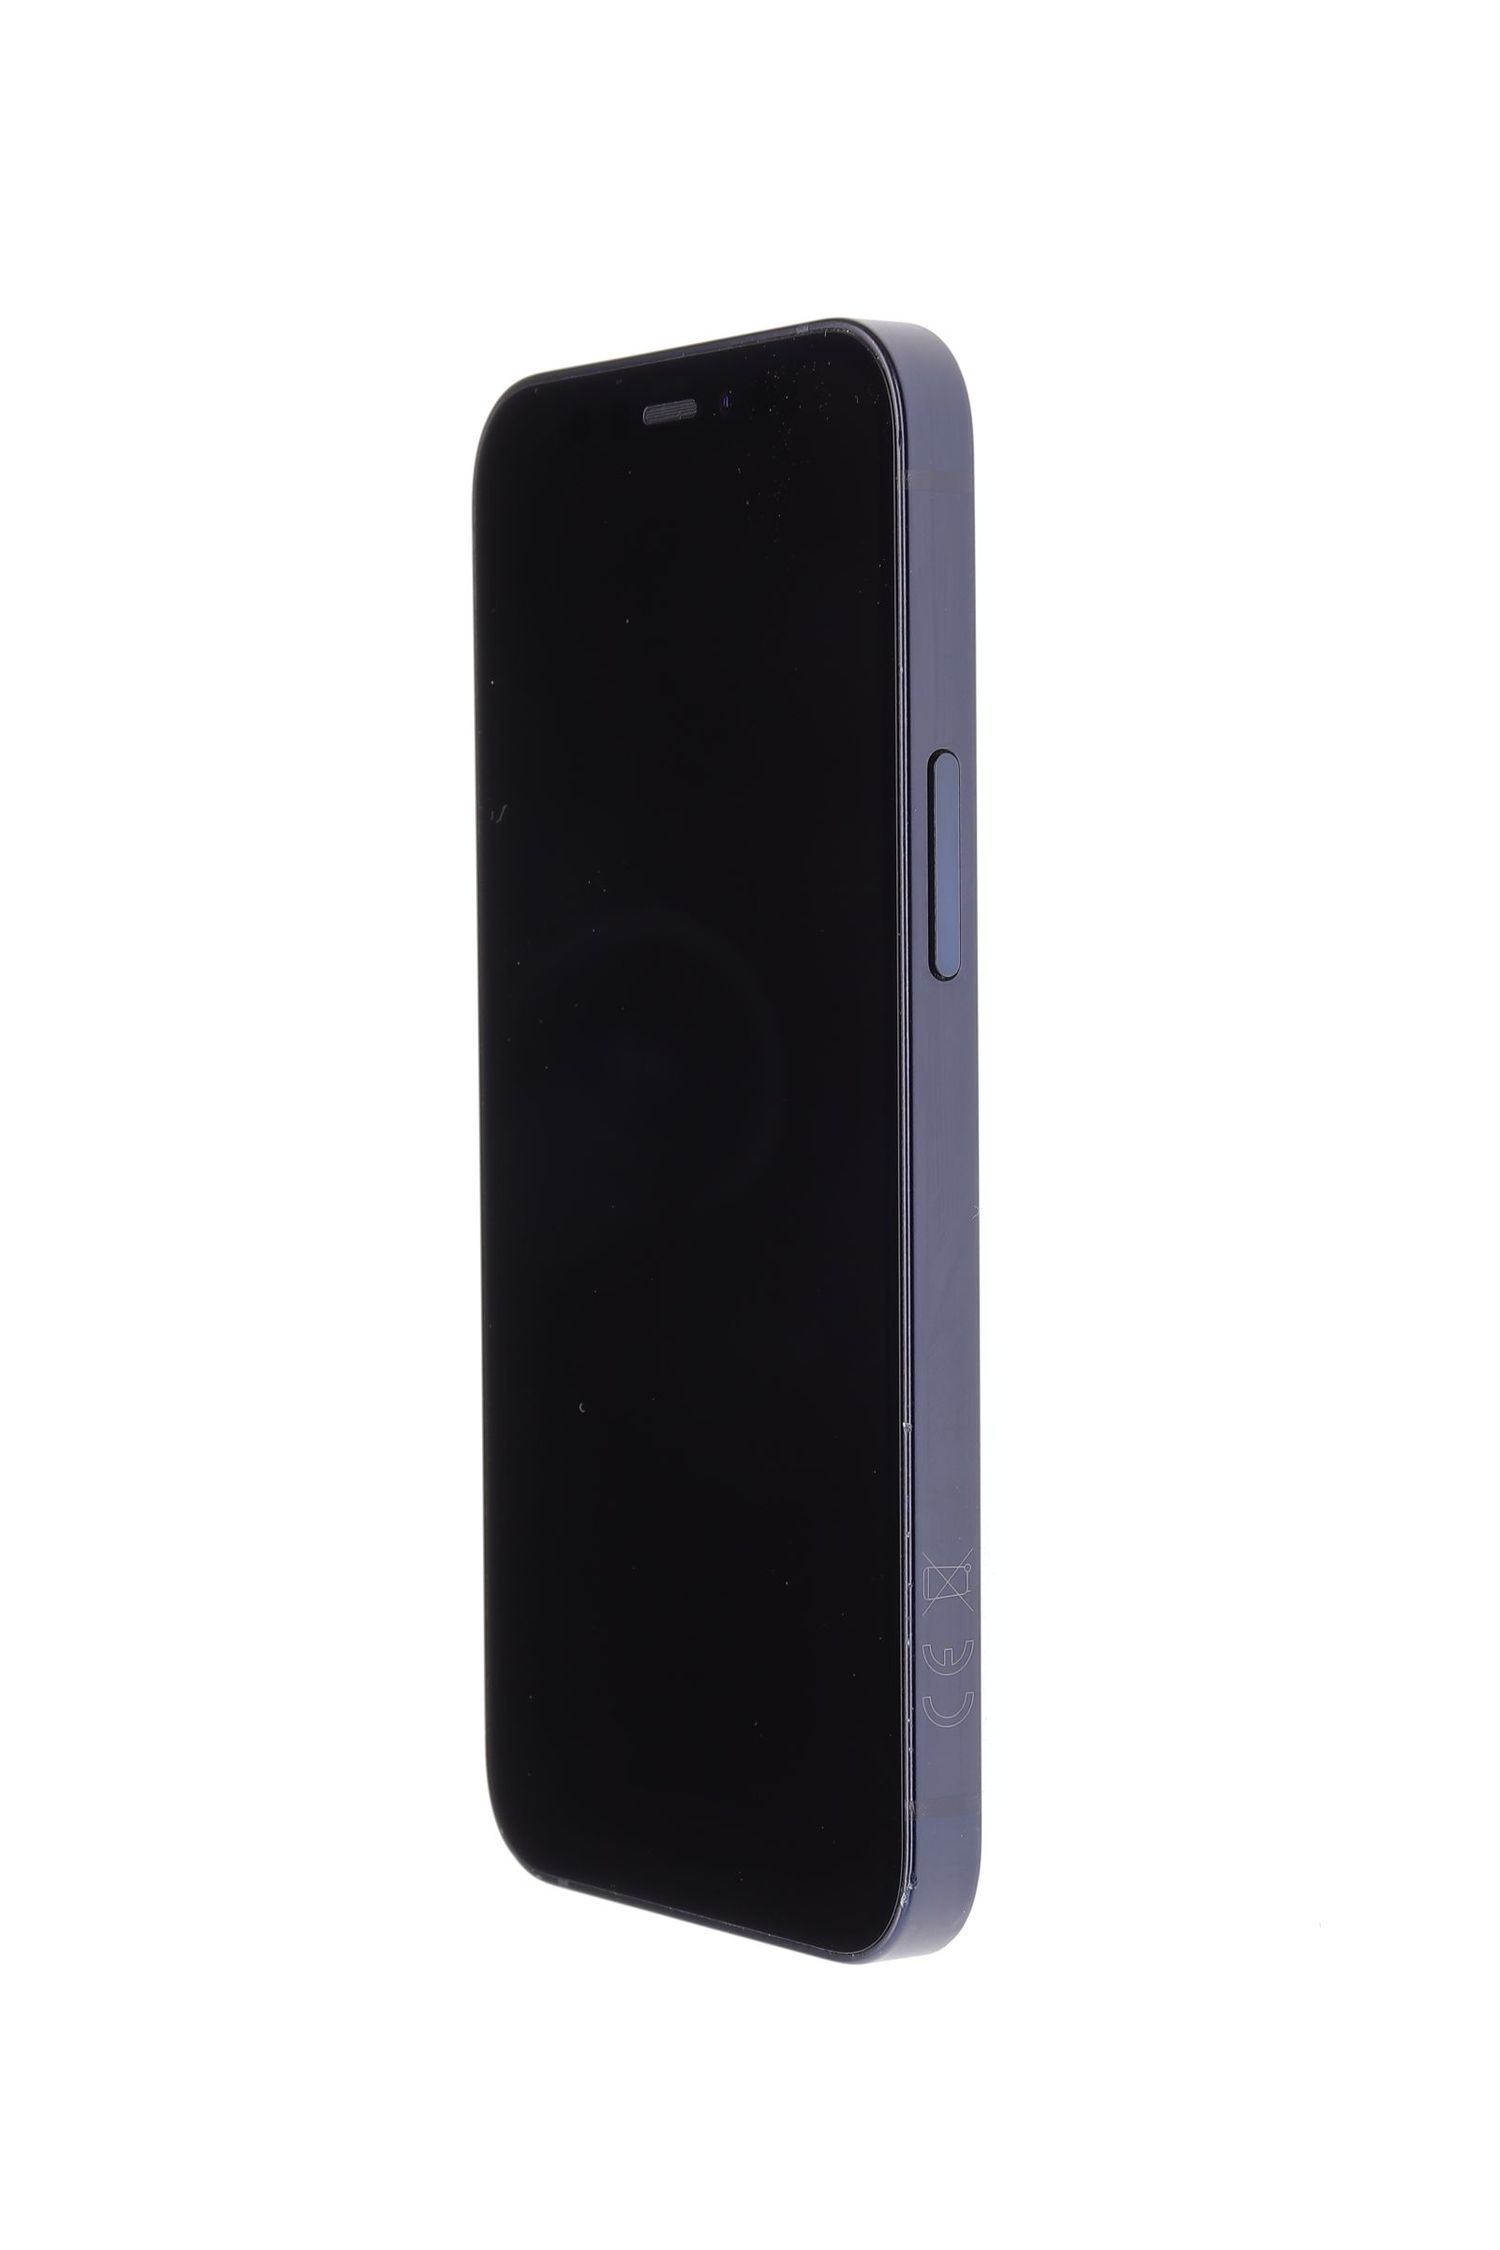 Telefon mobil Apple iPhone 12 mini, Black, 128 GB, Ca Nou